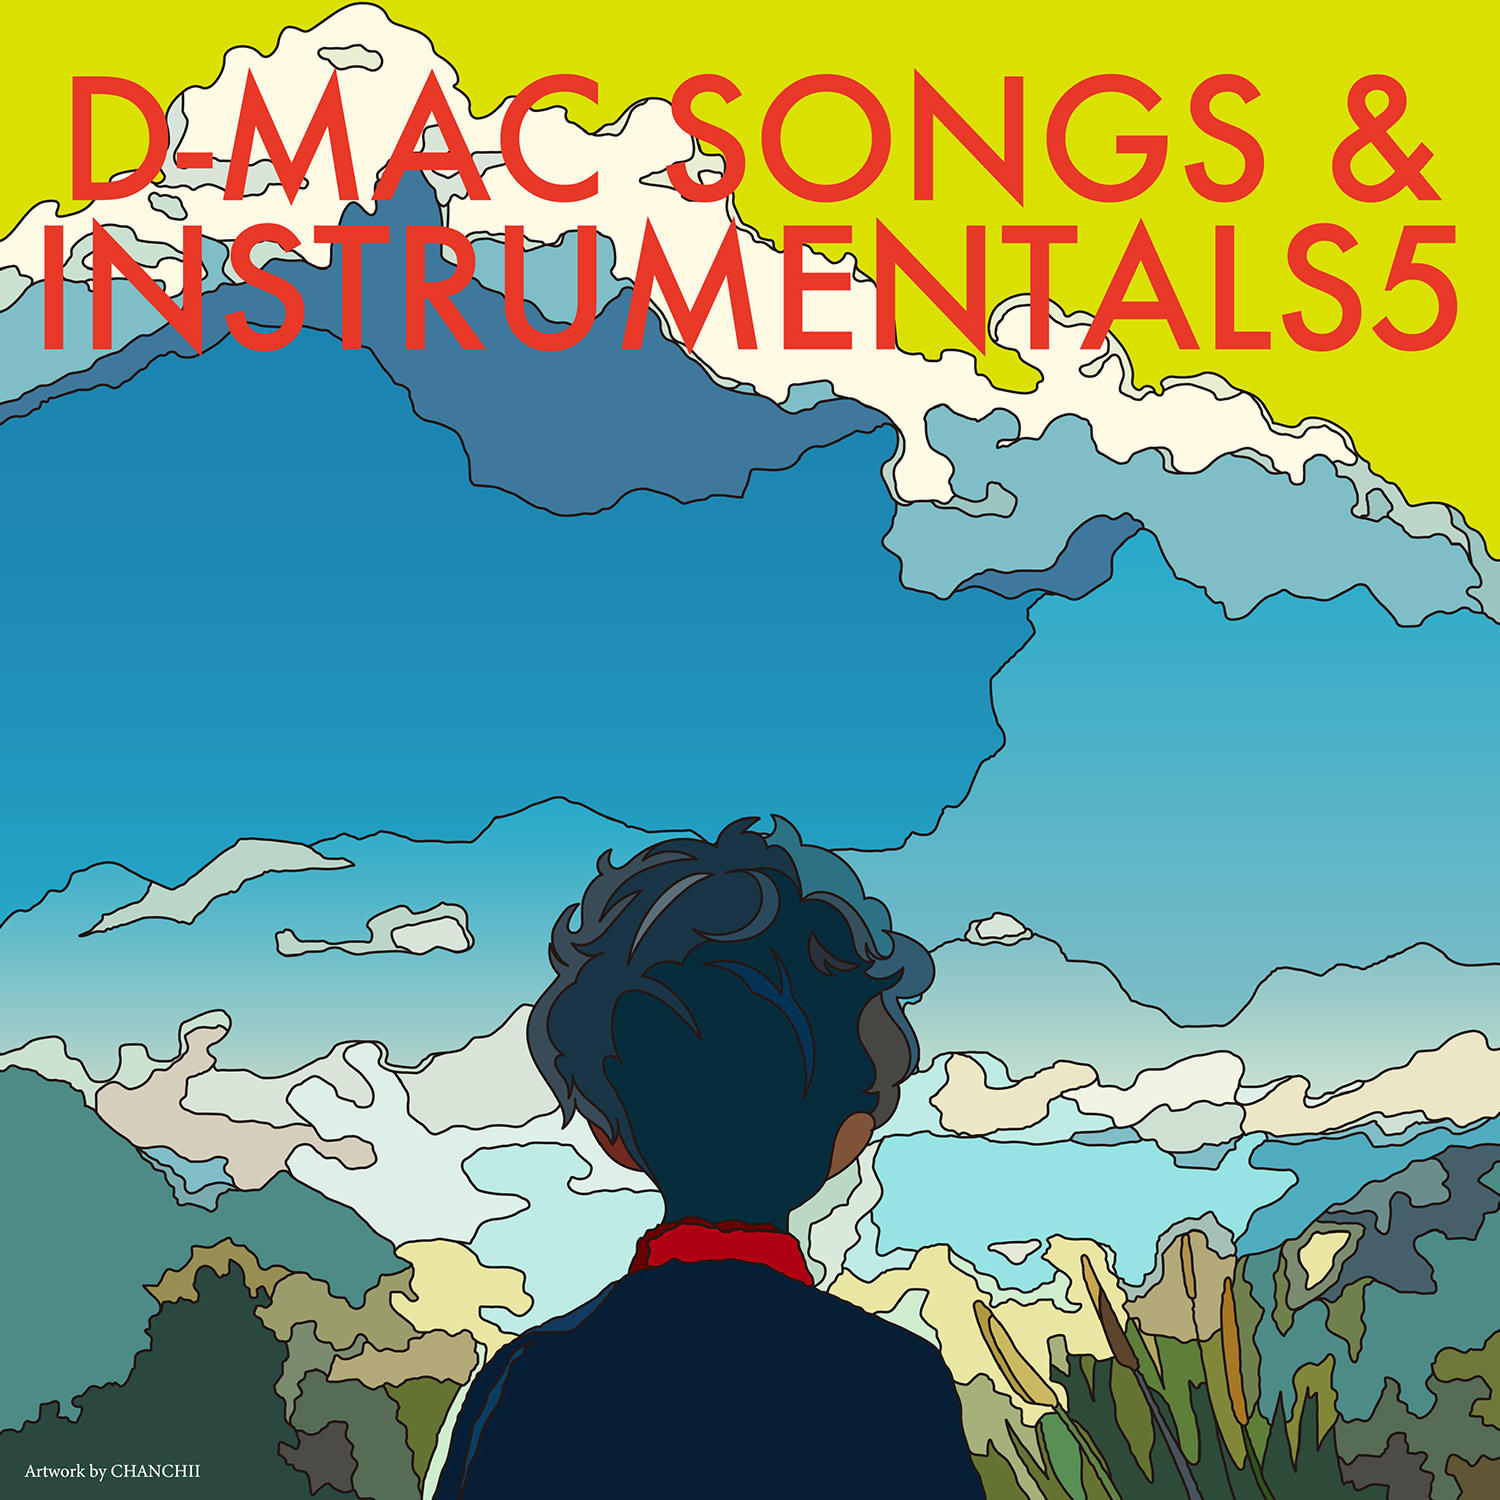 アレンジ・作曲学科と音楽総合アカデミー学科のレーベルD-MAC RECORDSからアルバム『D-MAC SONGS&INSTRUMENTALS 5』がリリースされました